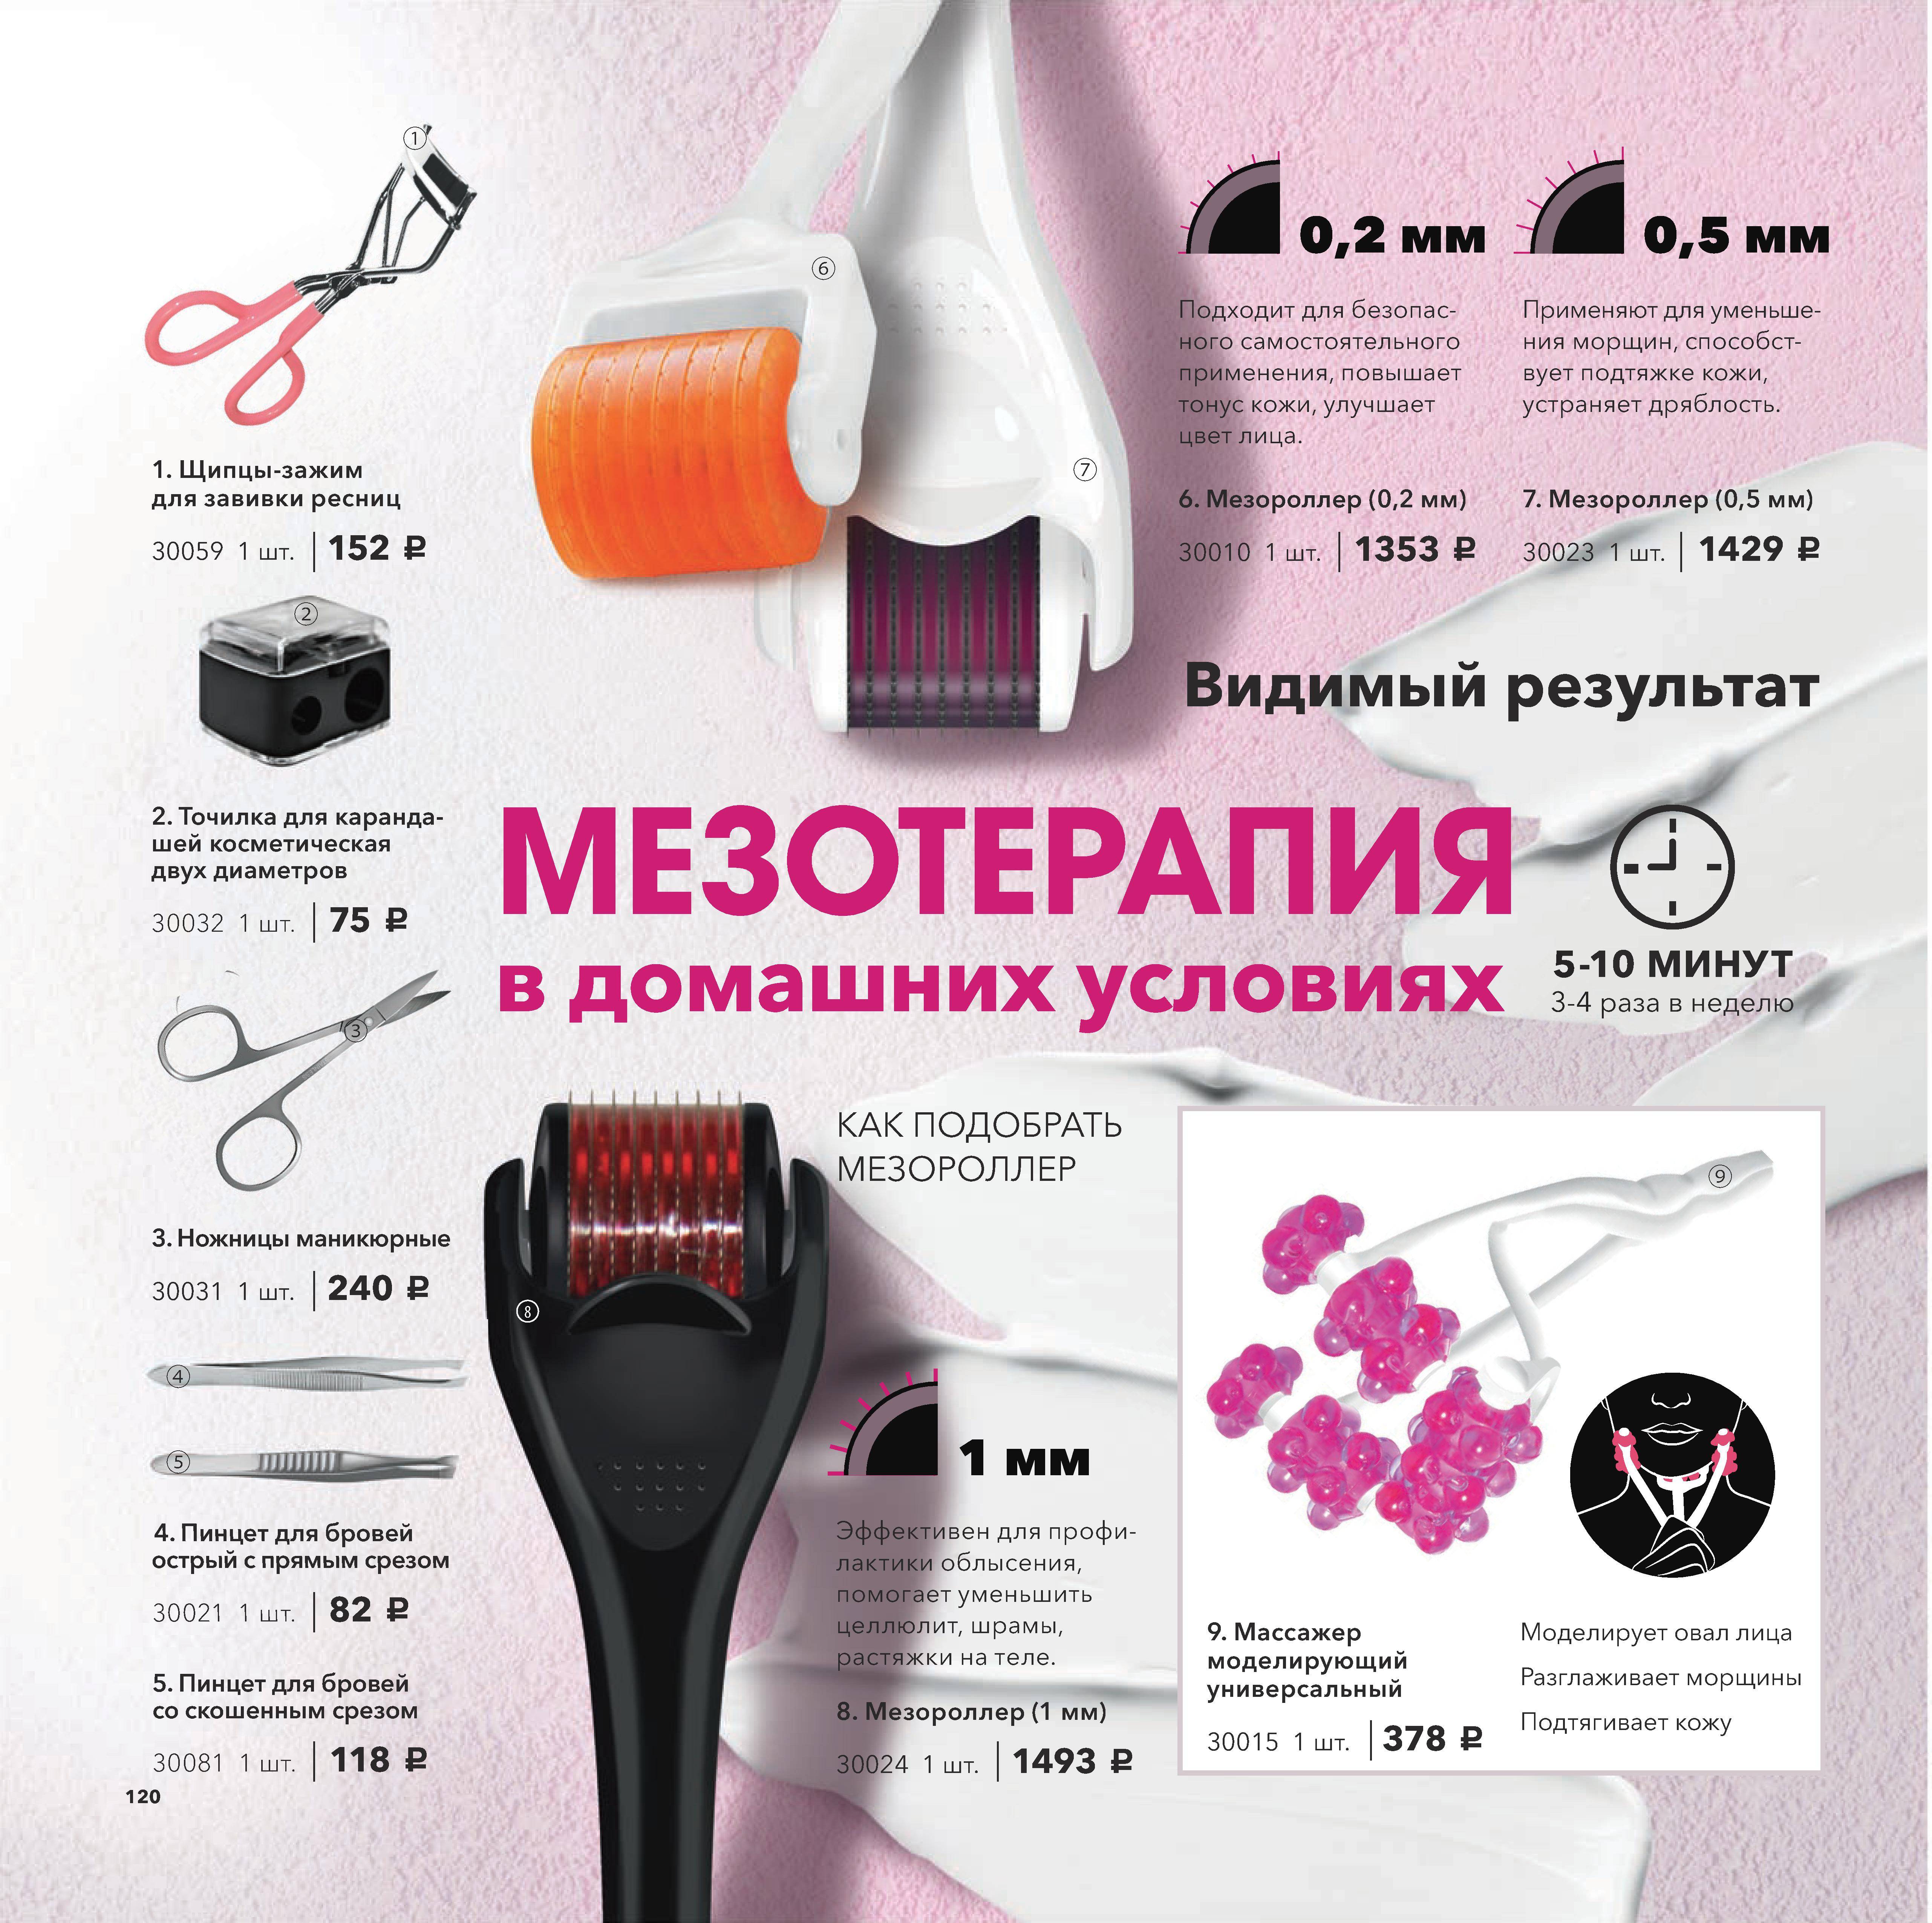 Мезороллер для лица - как пользоваться в домашних условиях, как выбрать дермароллер | expertcosmo.ru